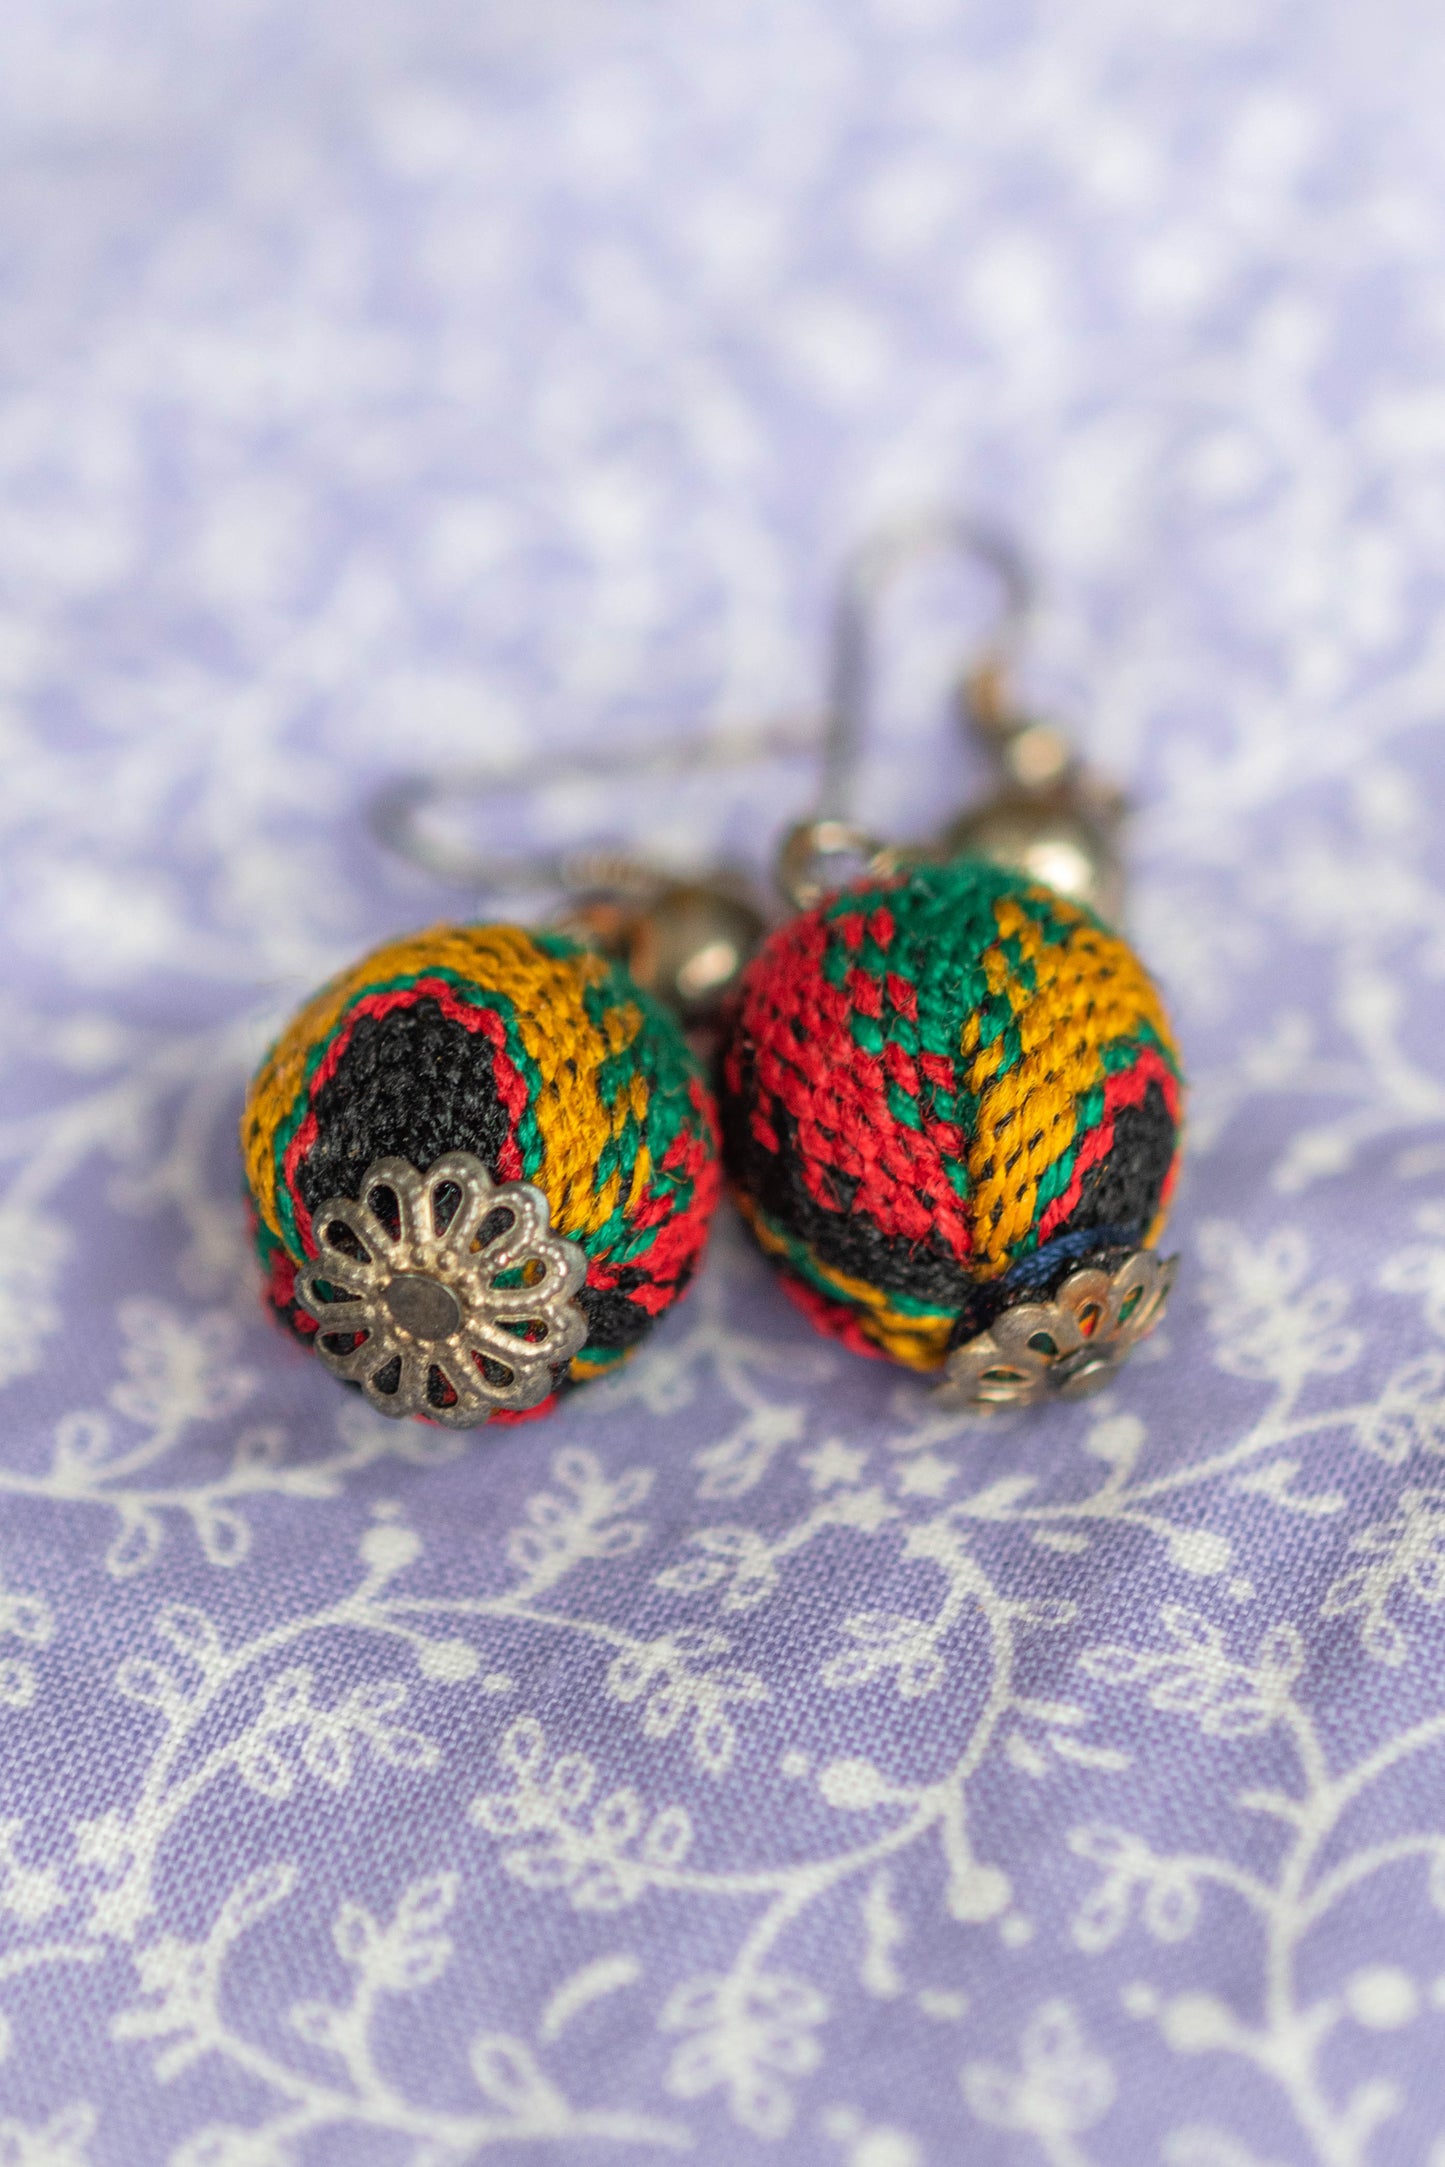 NEW IN! Crochet earrings